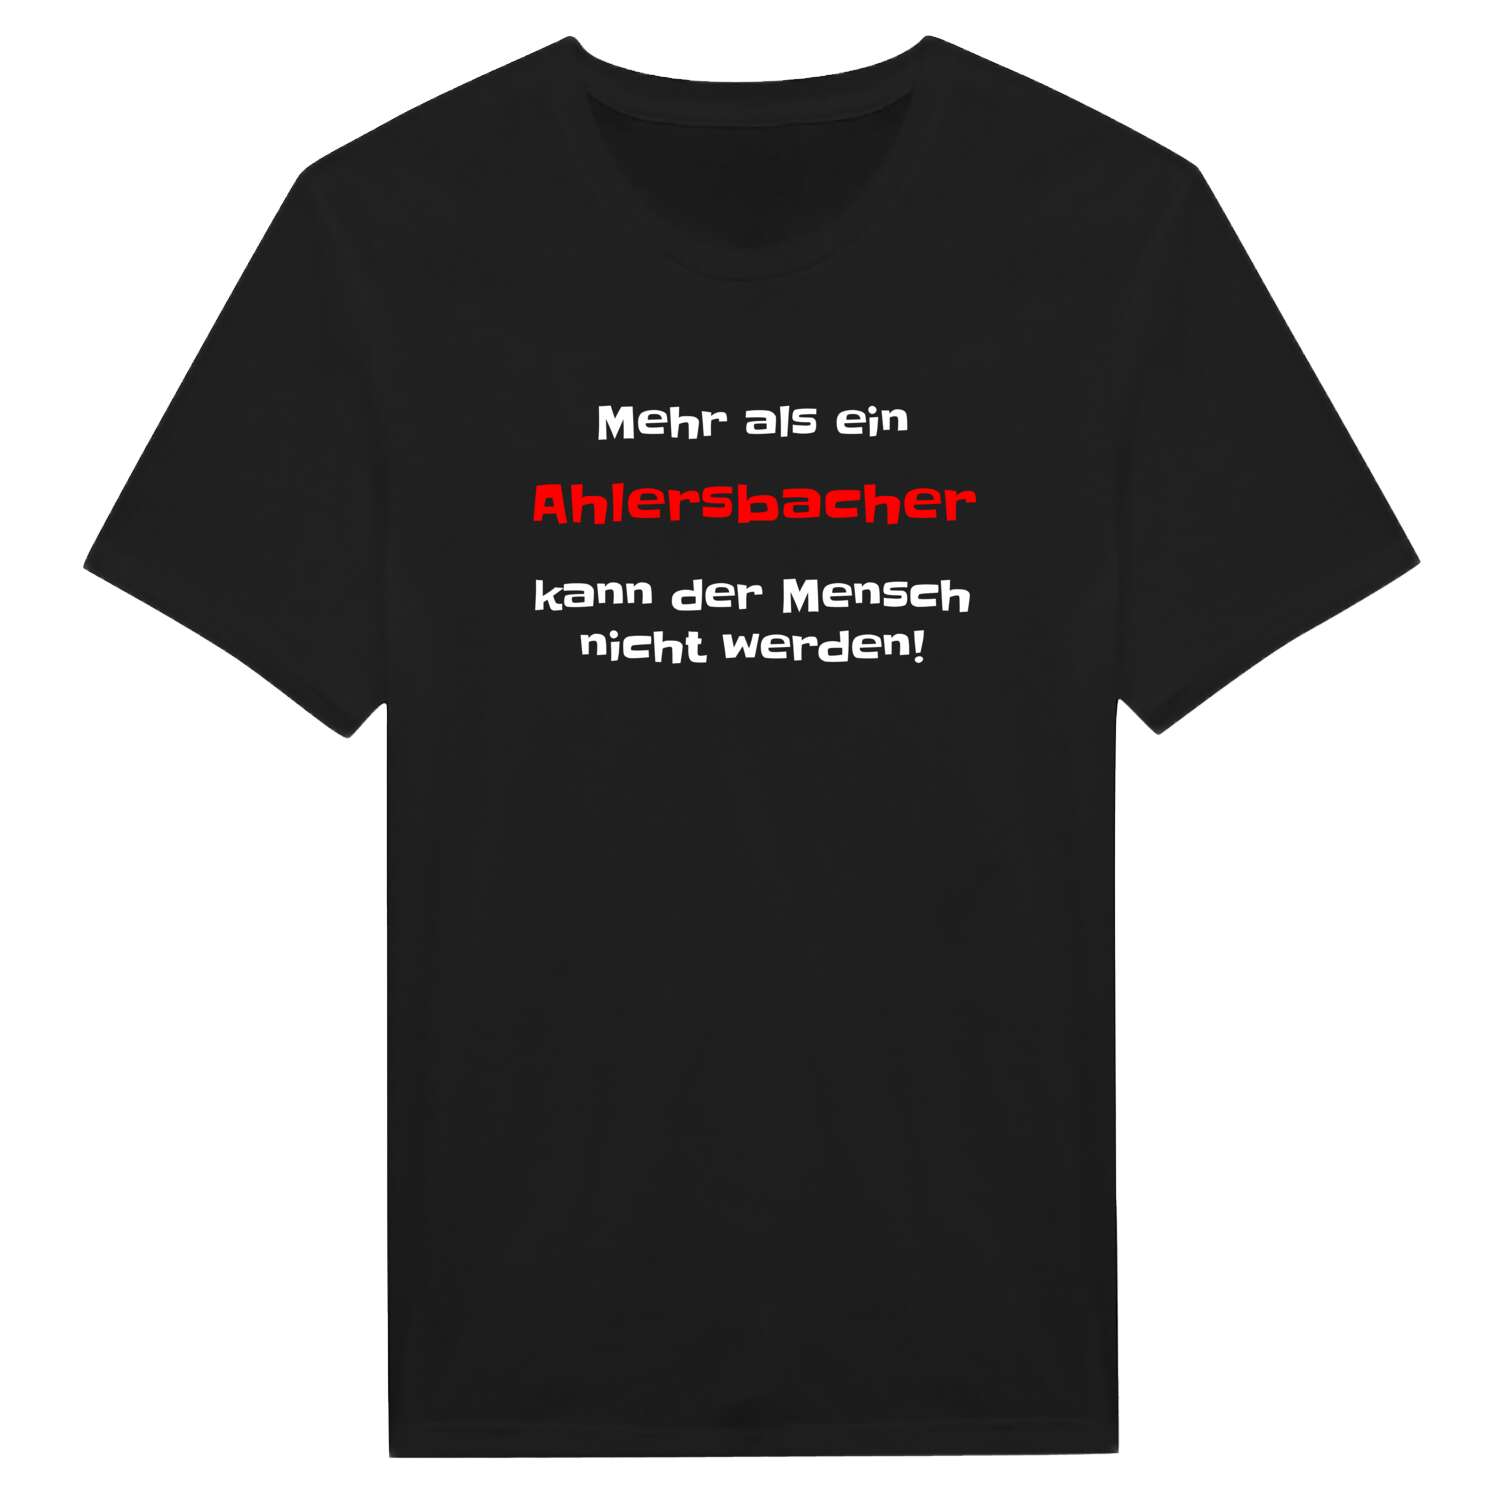 Ahlersbach T-Shirt »Mehr als ein«